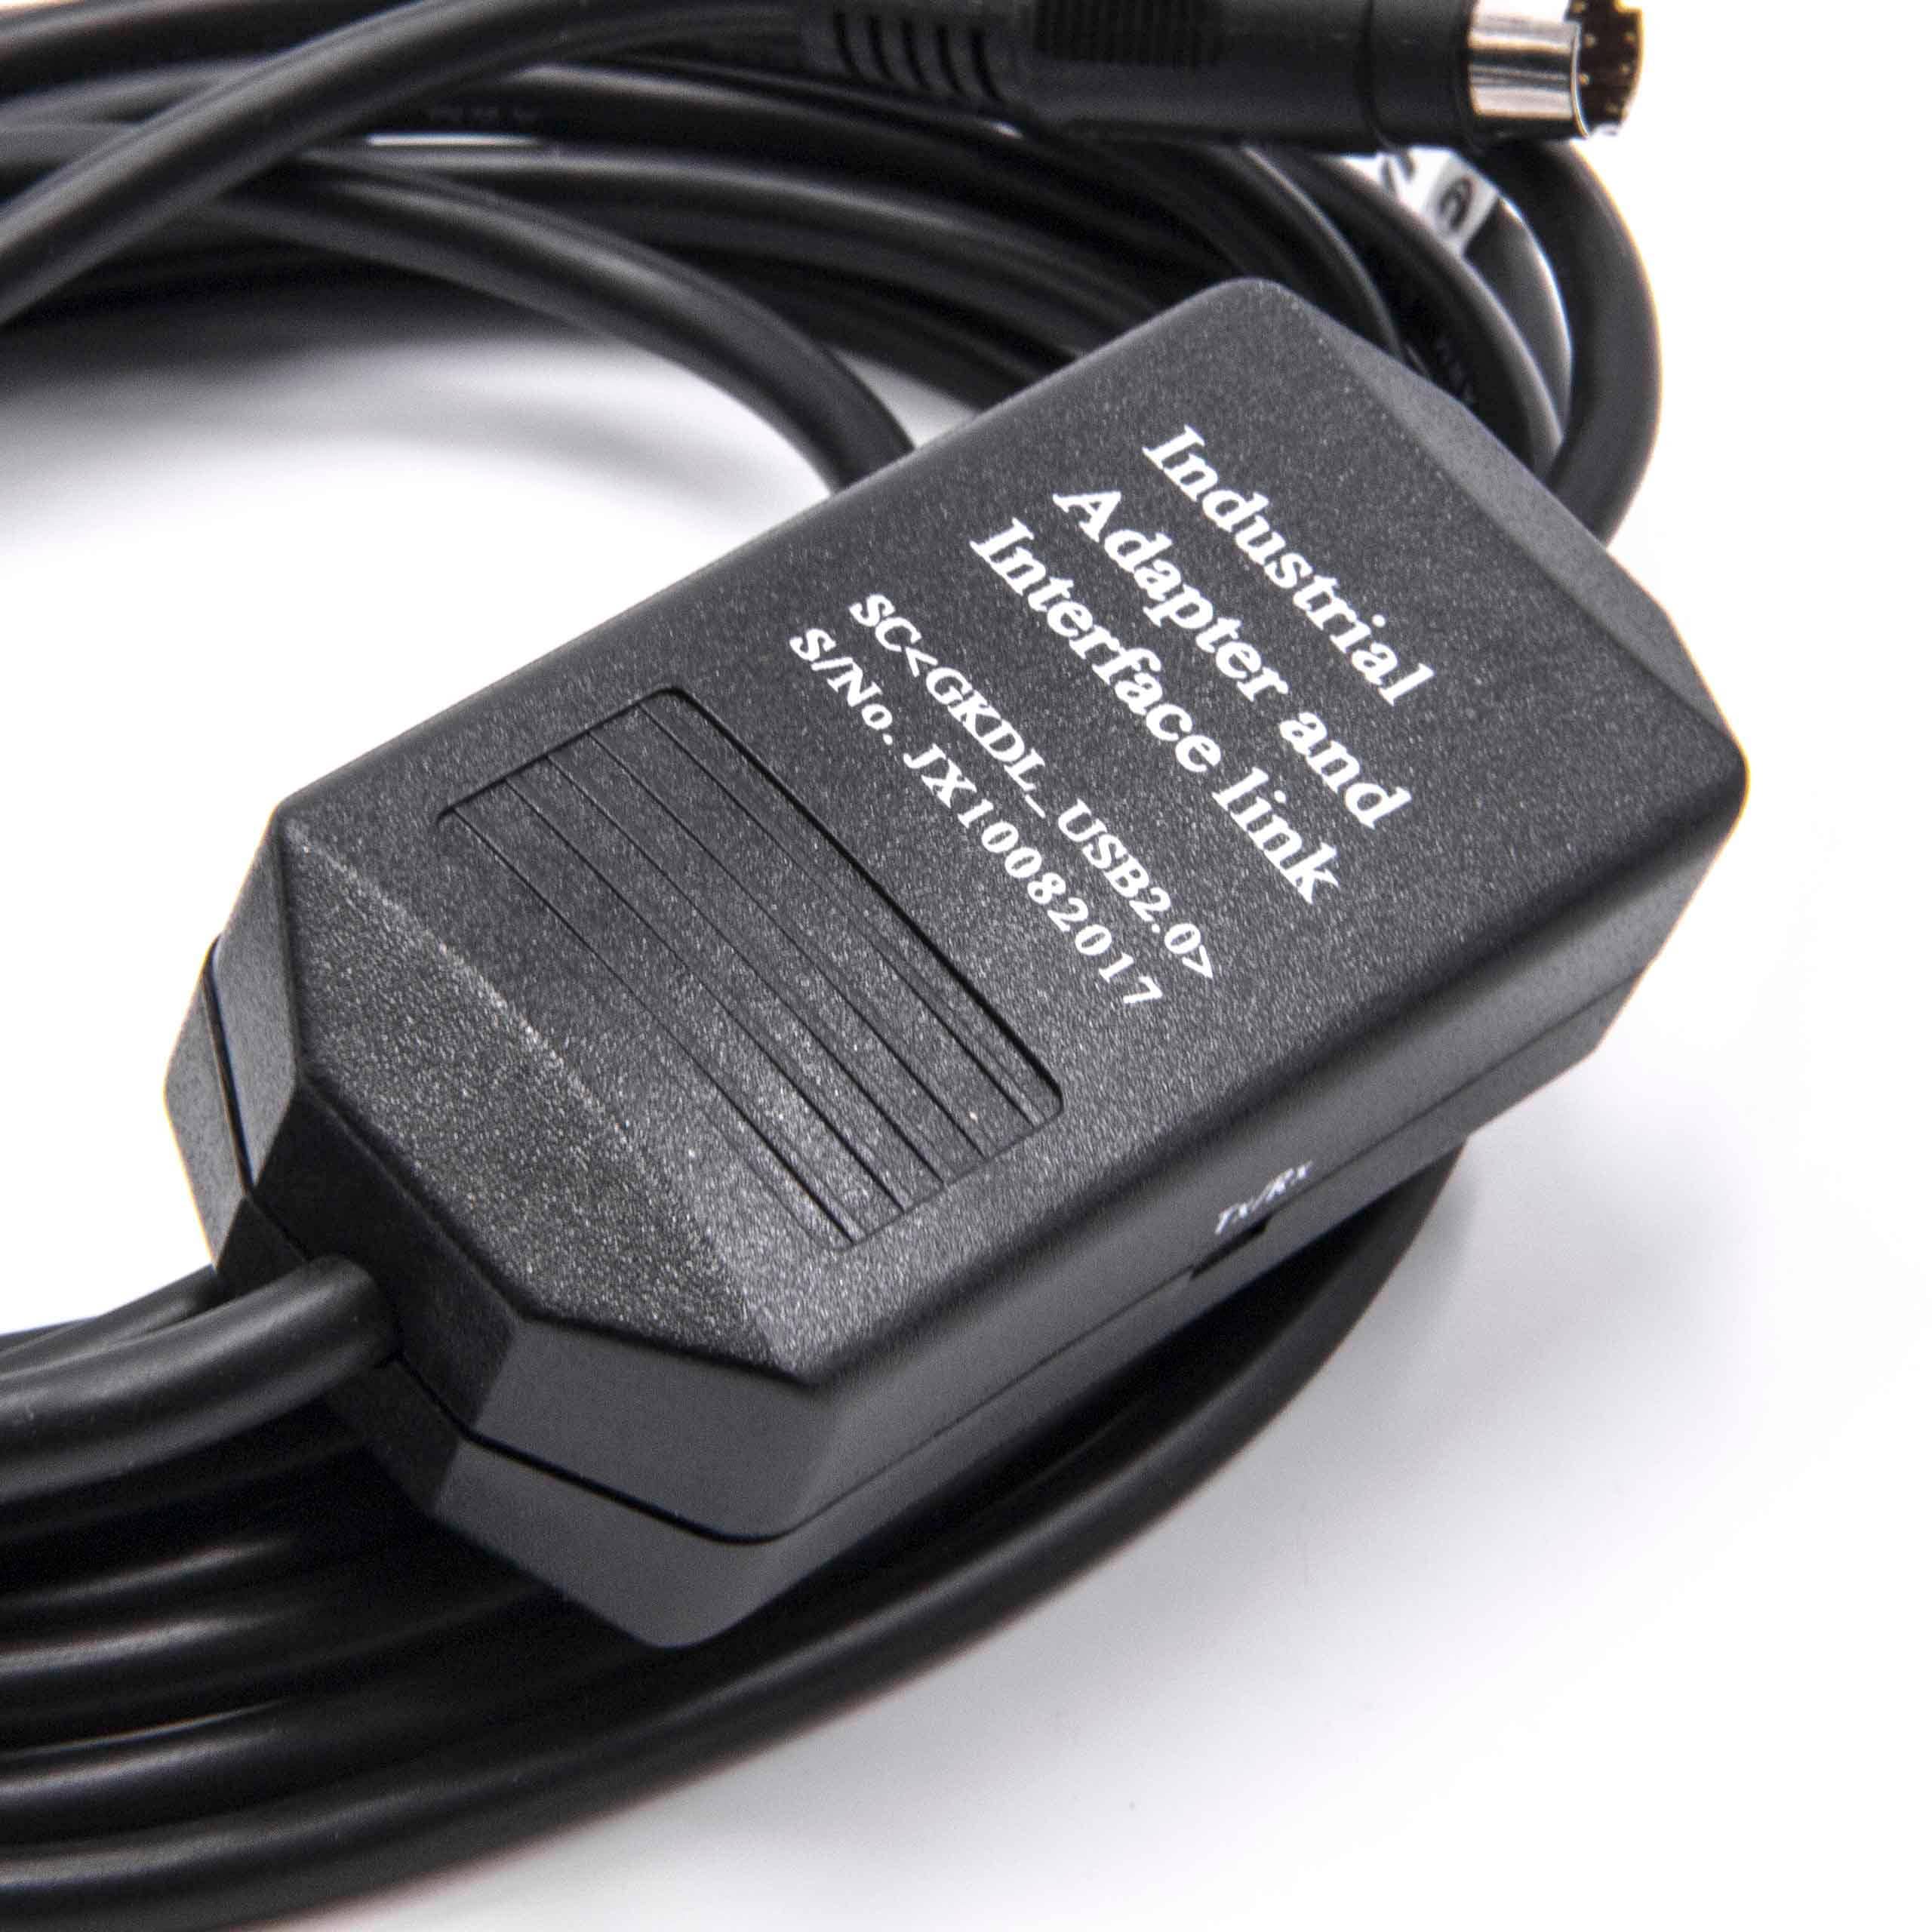 Cavo di programmazione USB sostituisce USB-1761-CBL-PM02 radio